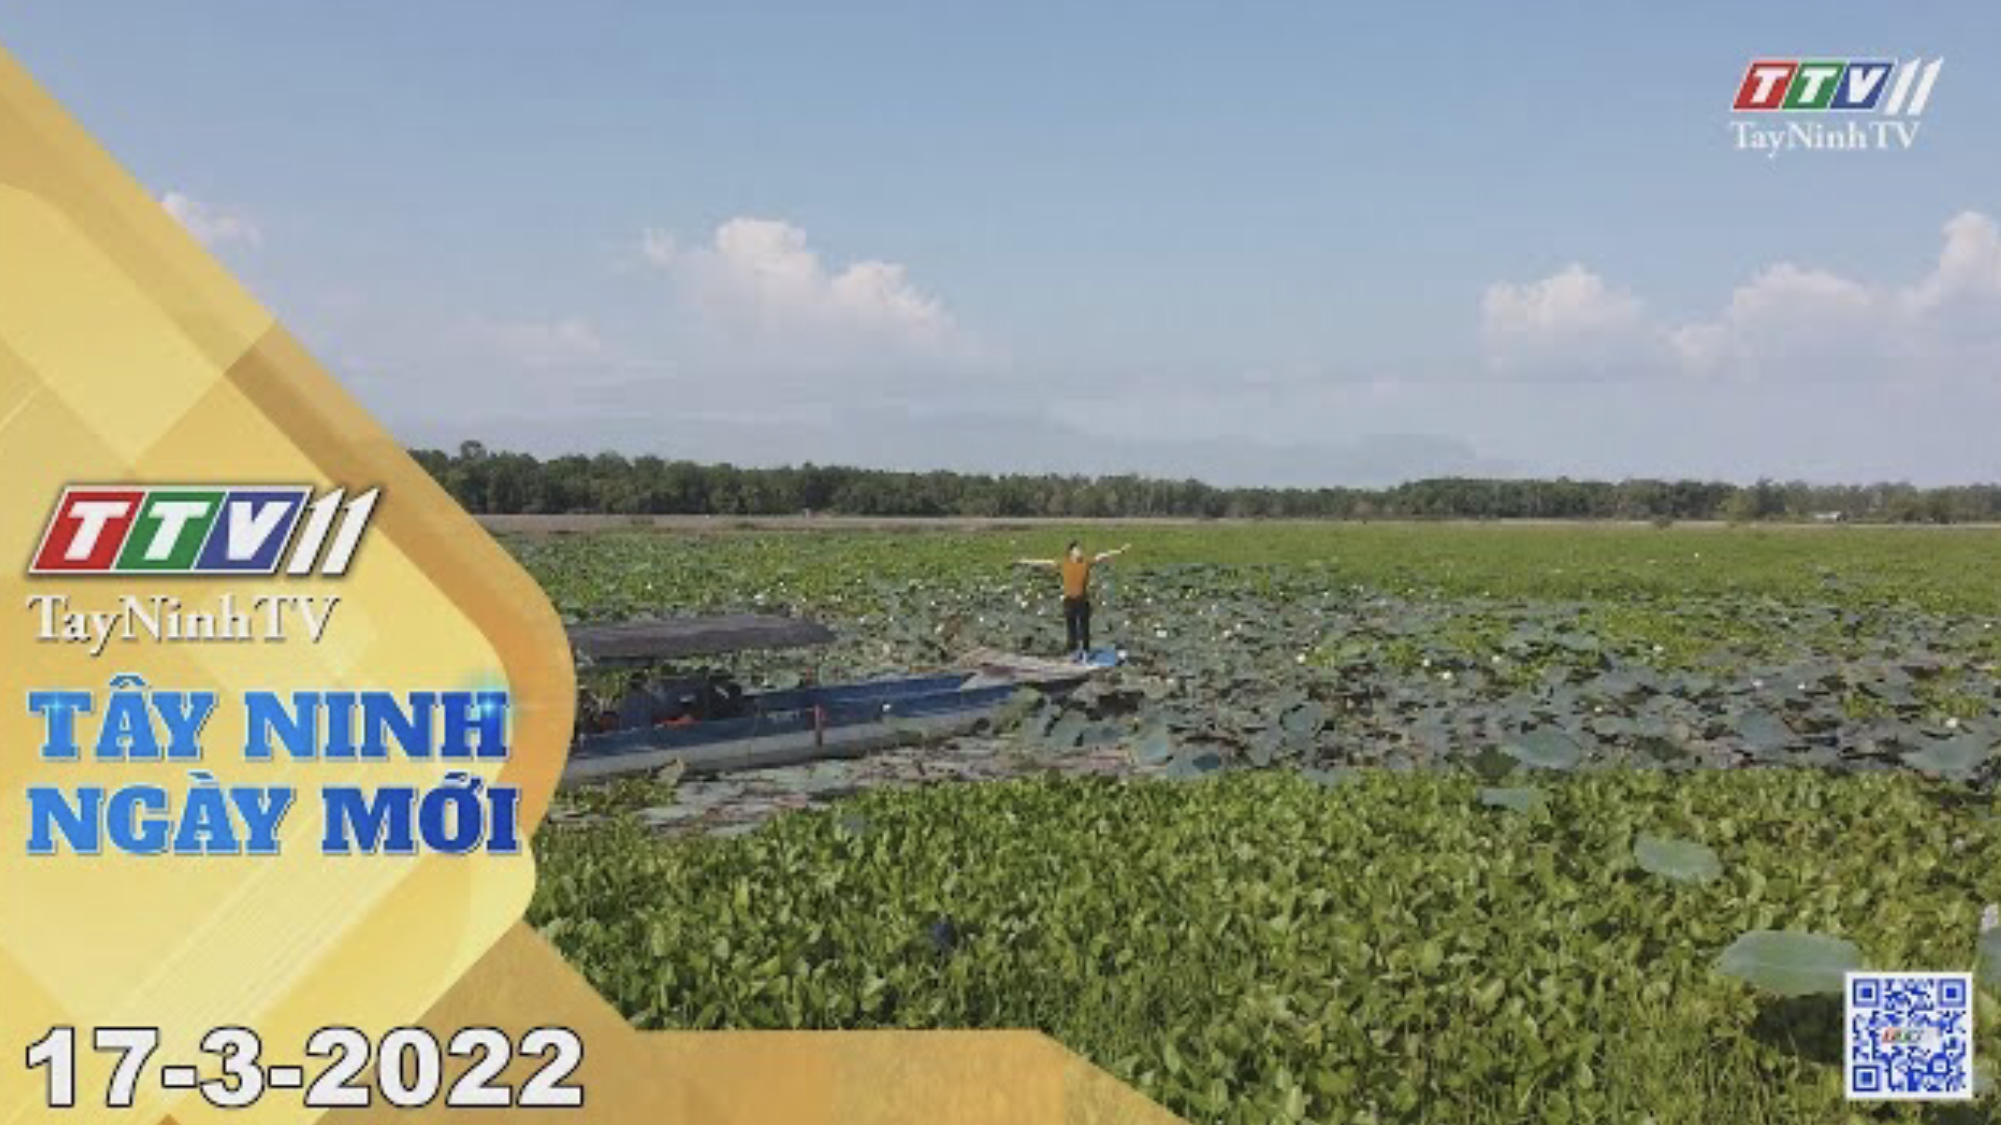 Tây Ninh ngày mới 17-3-2022 | Tin tức hôm nay | TayNinhTV